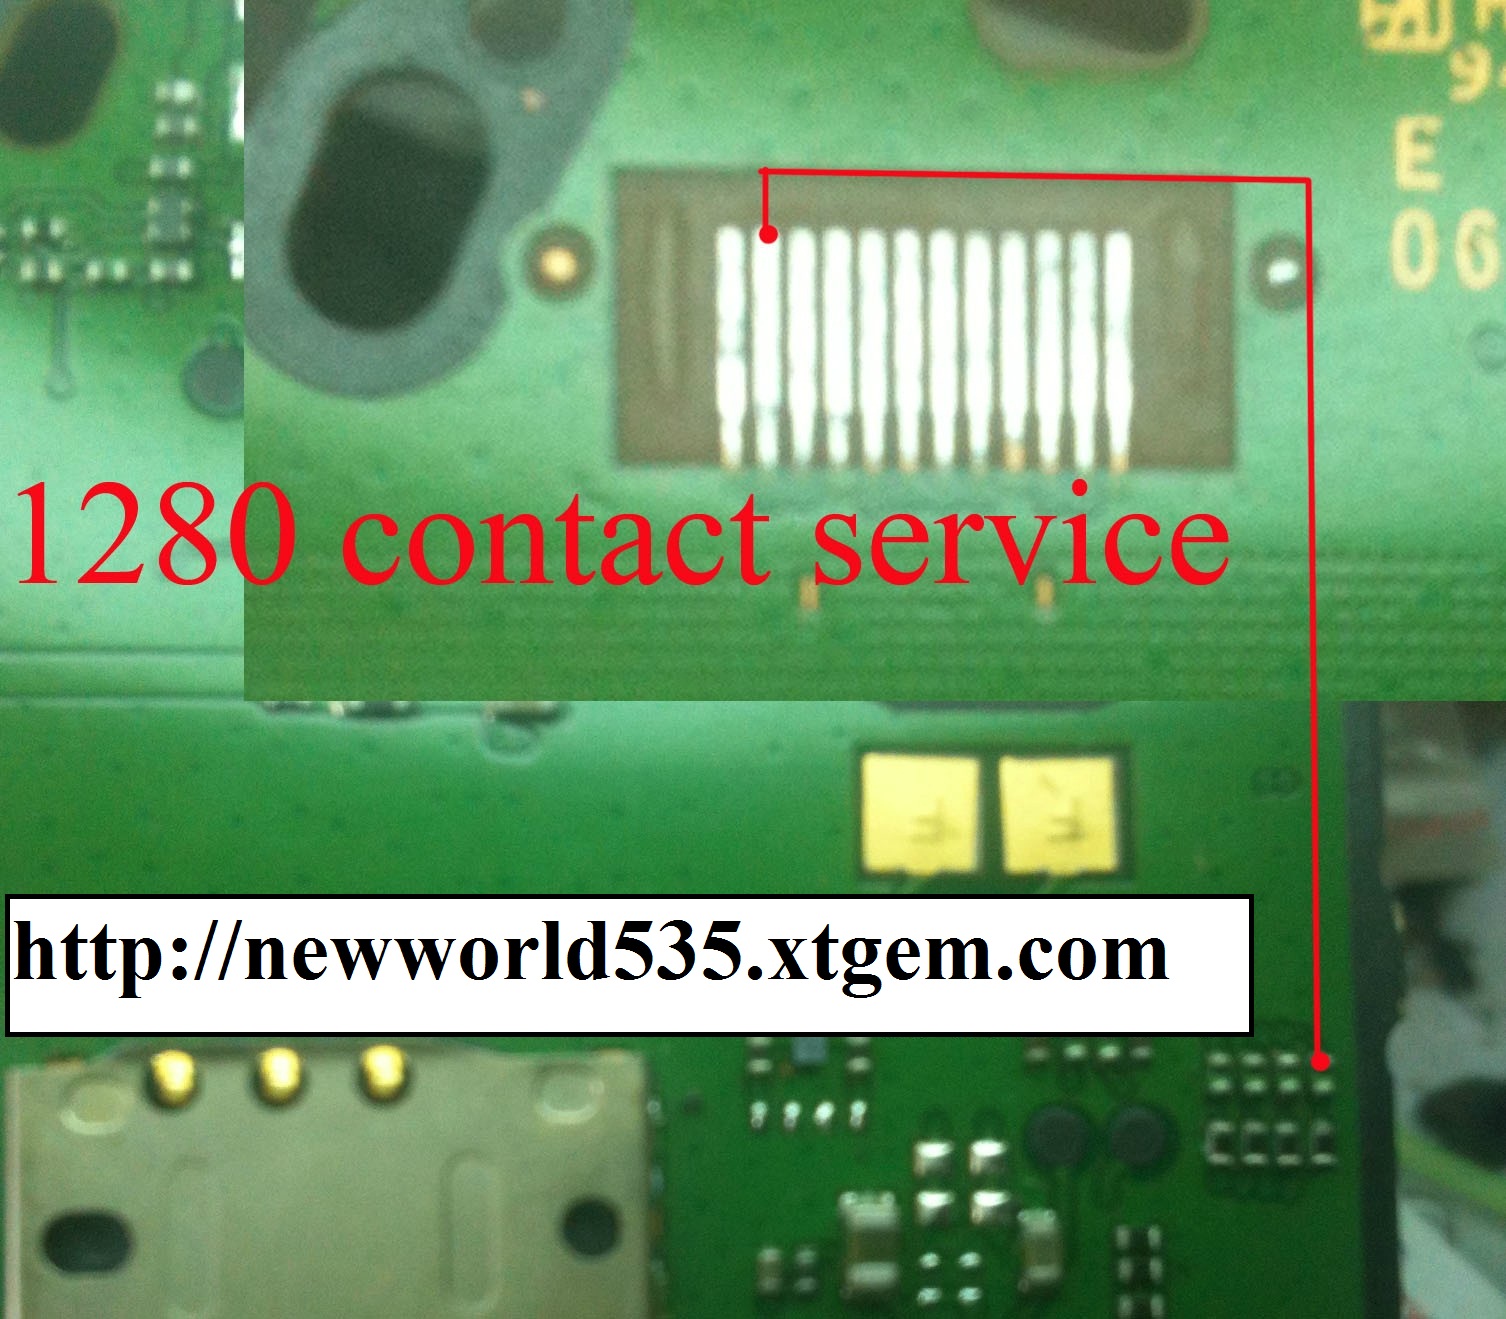 Nokia 1280 contact service